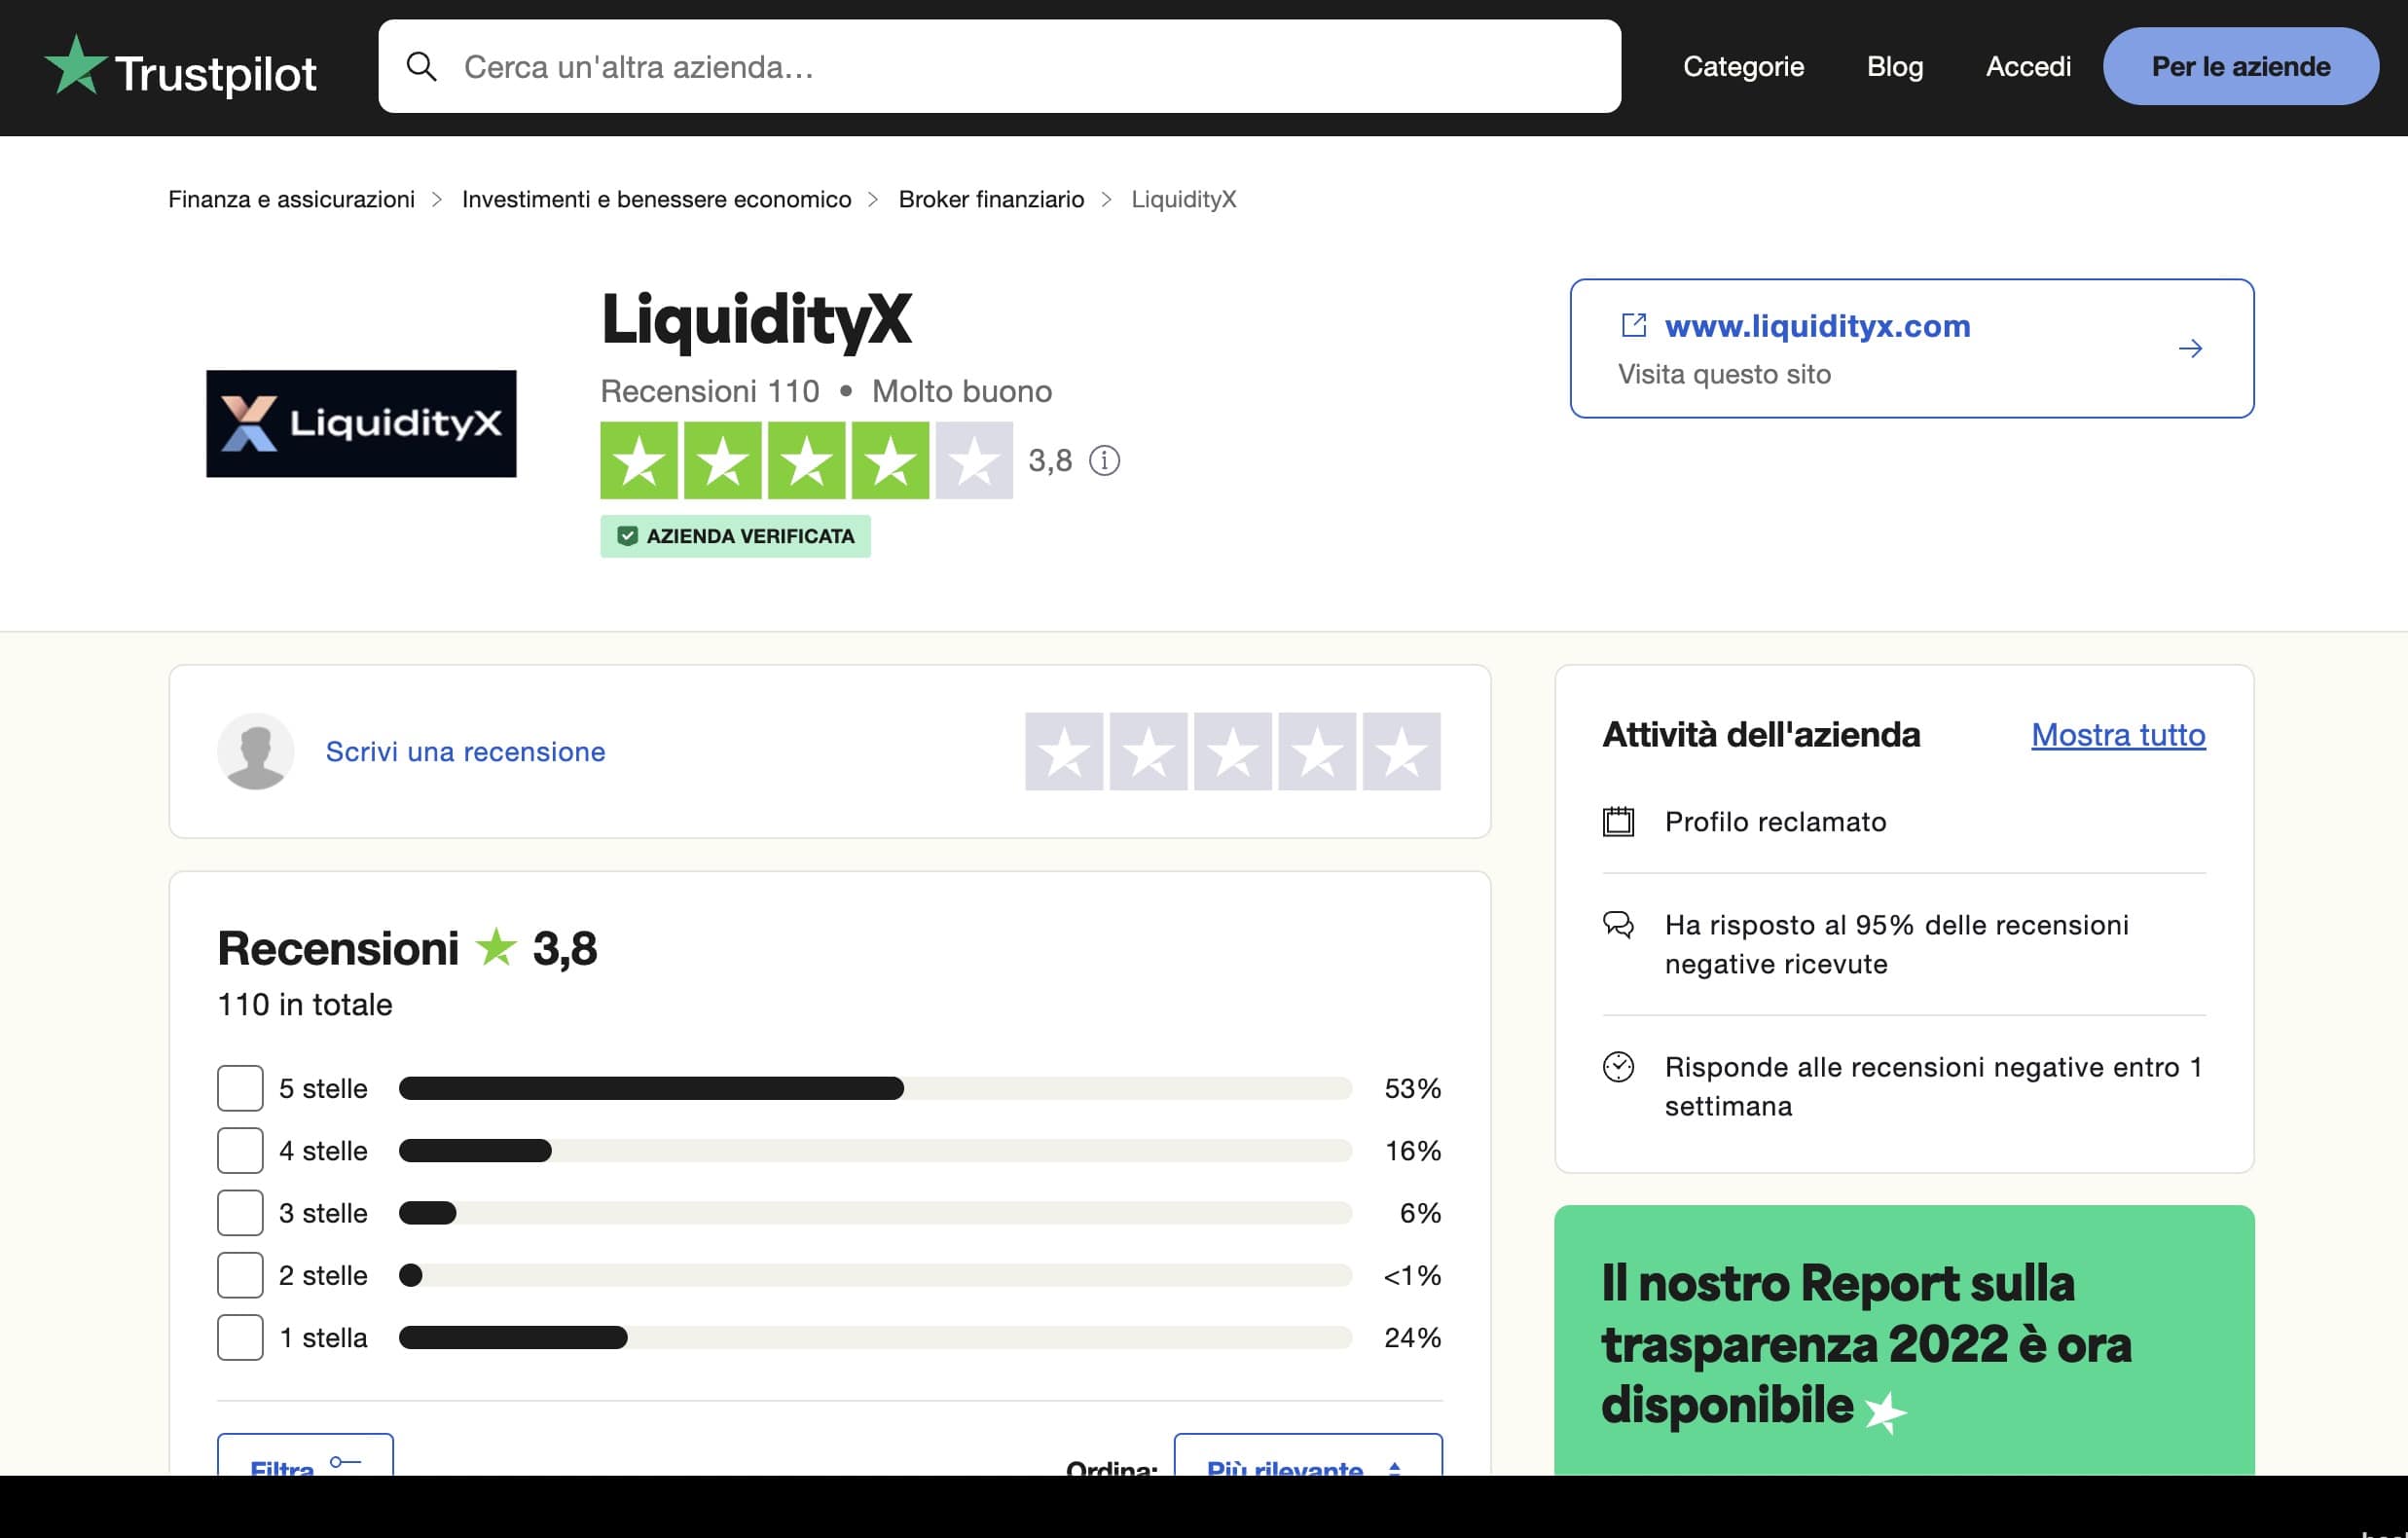 LiquidityX Trustpilot